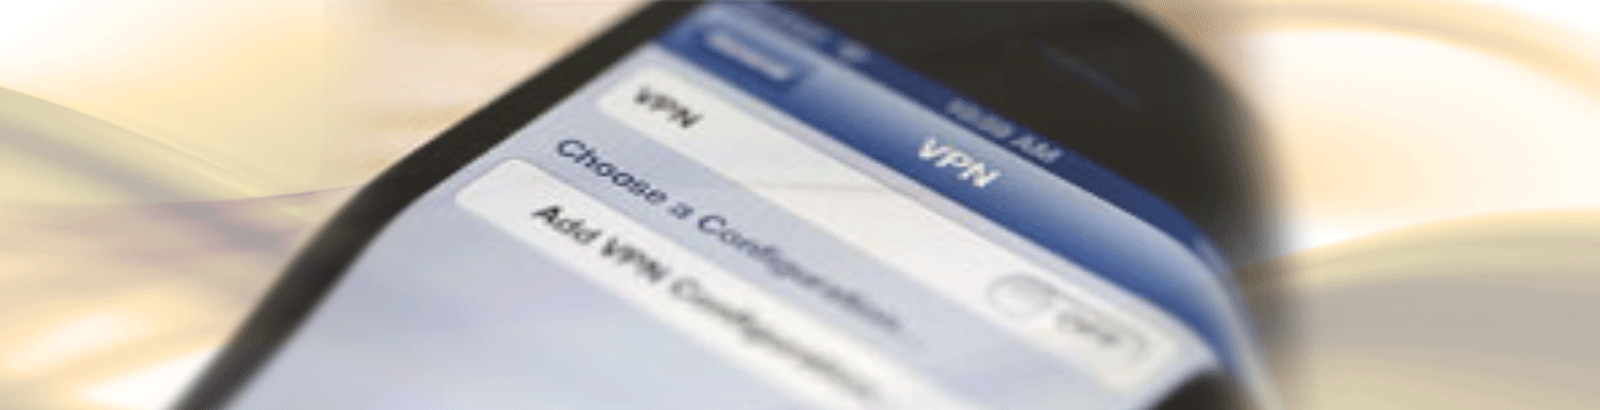 Melhorias no serviço VPN Unicamp permitem agora o acesso a partir de dispositivos móveis